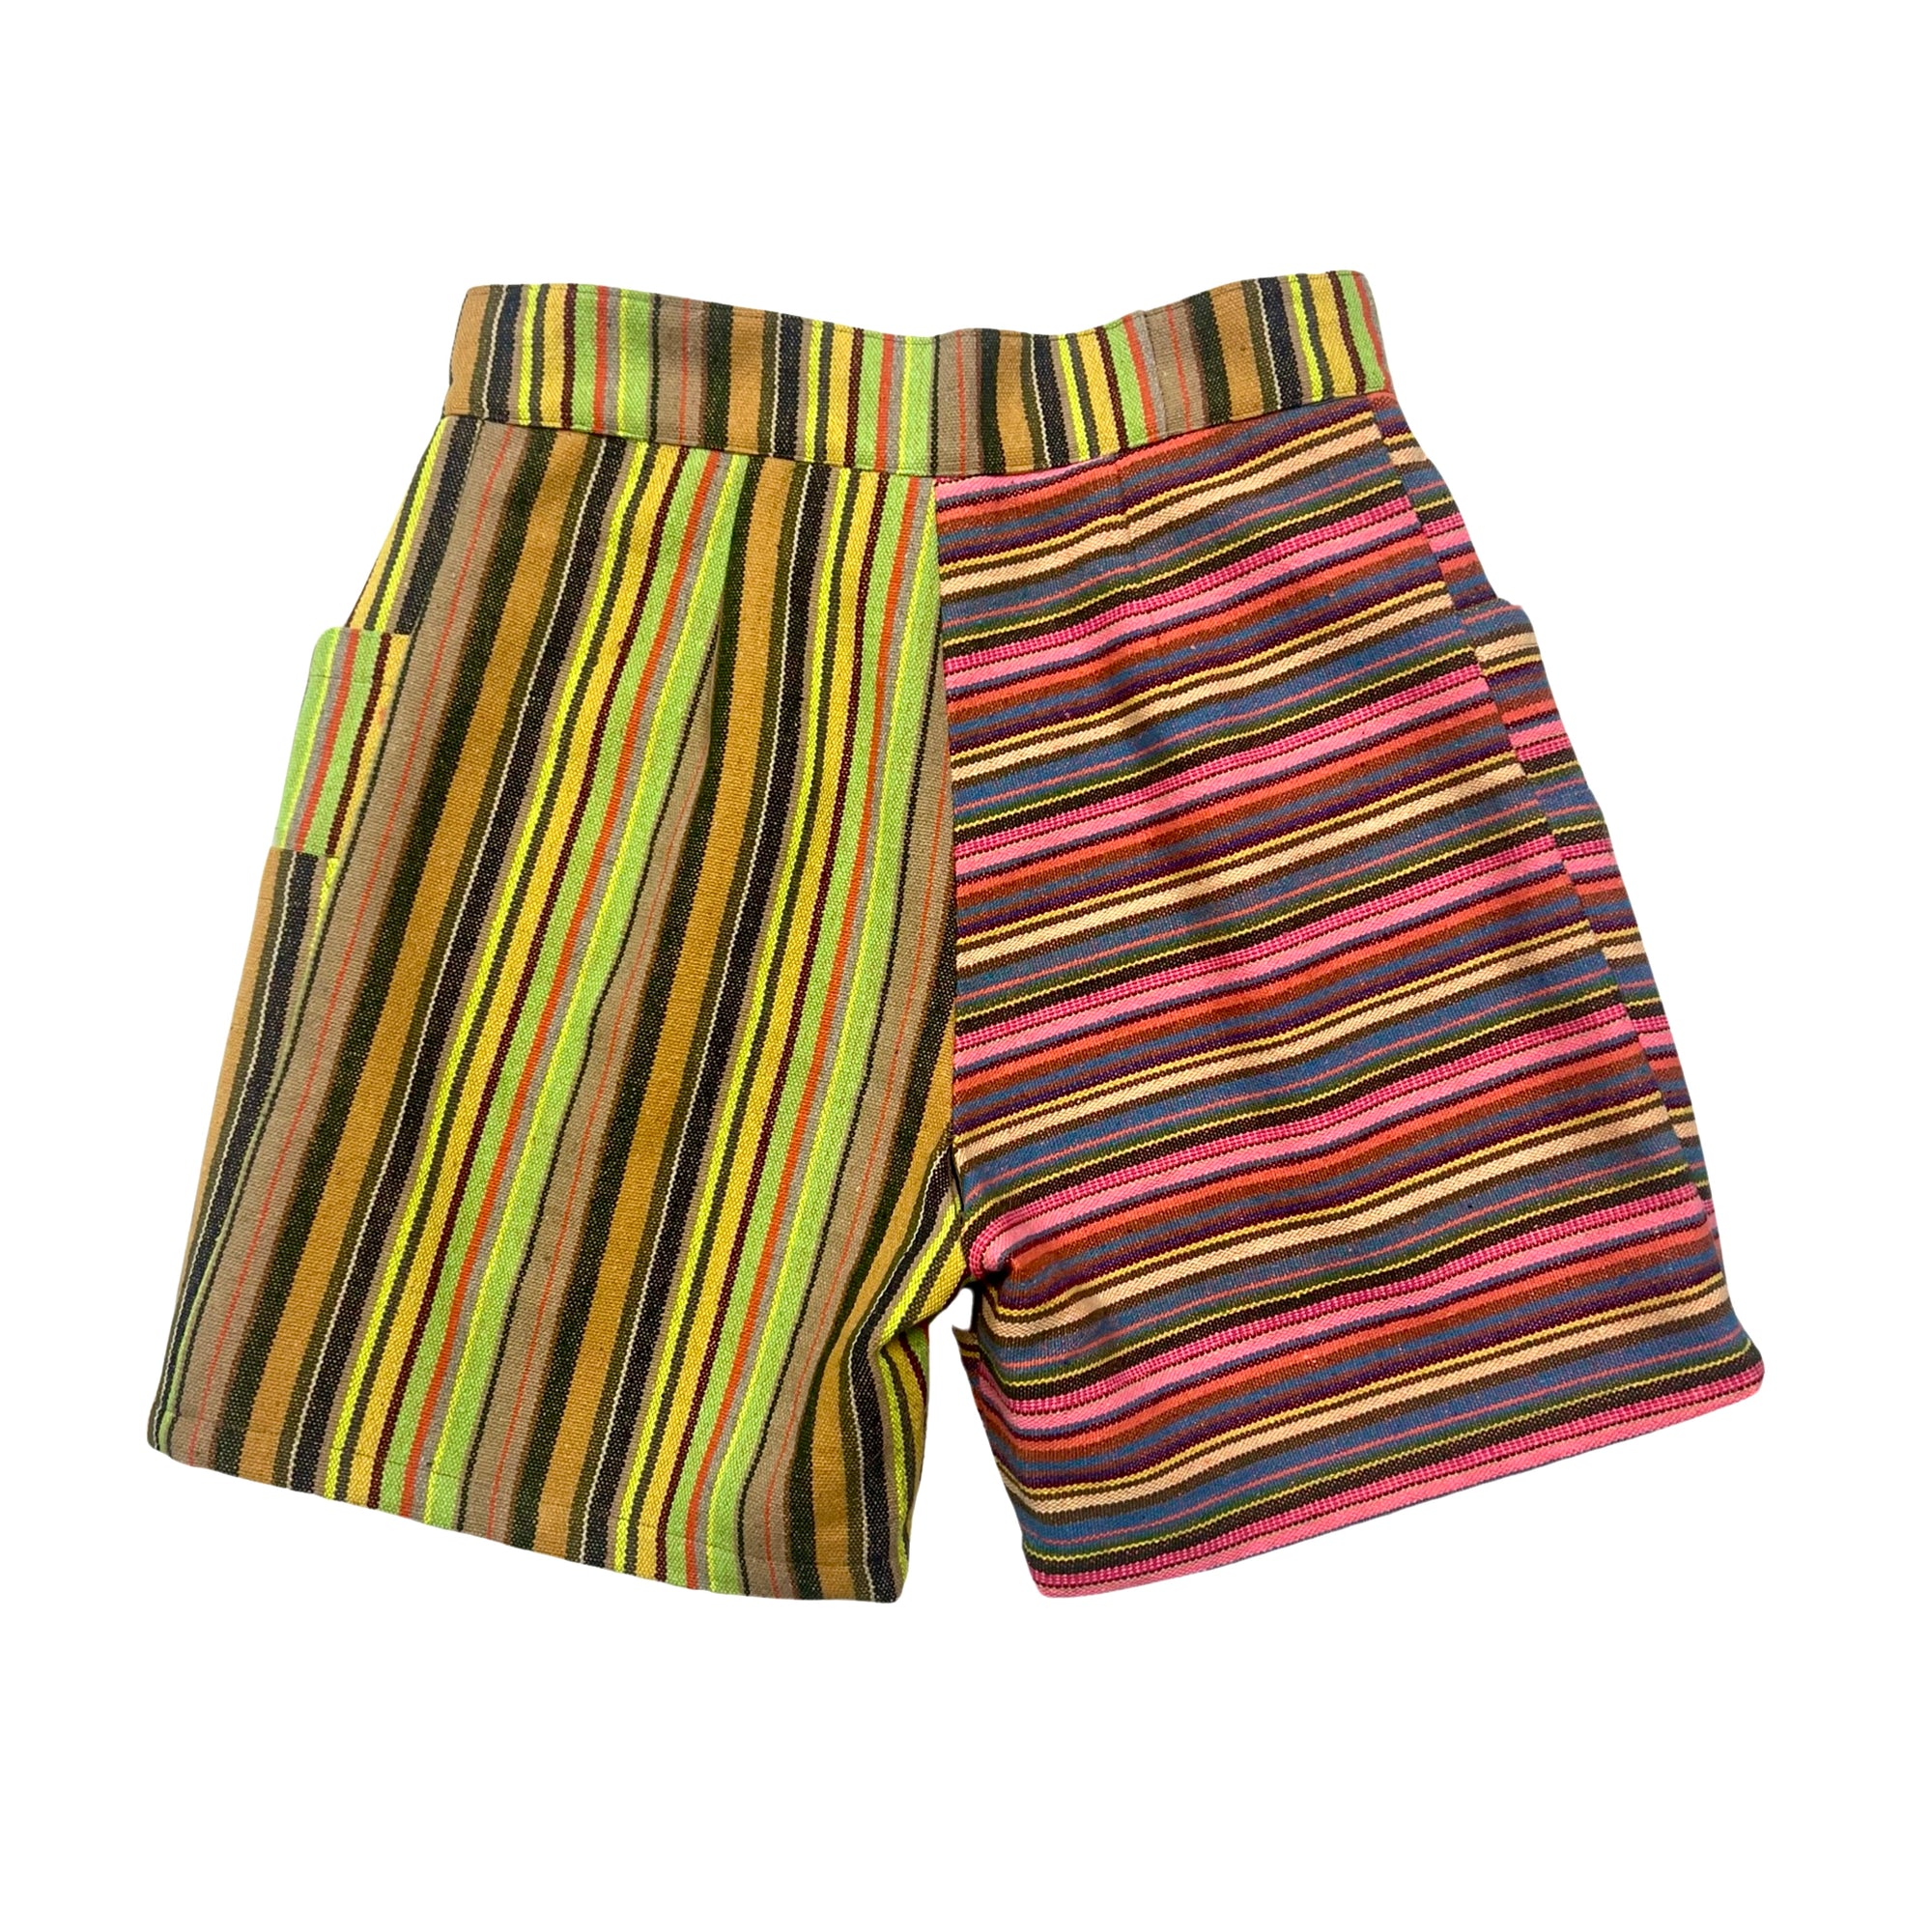 Men's Utility Shorts in Stripe